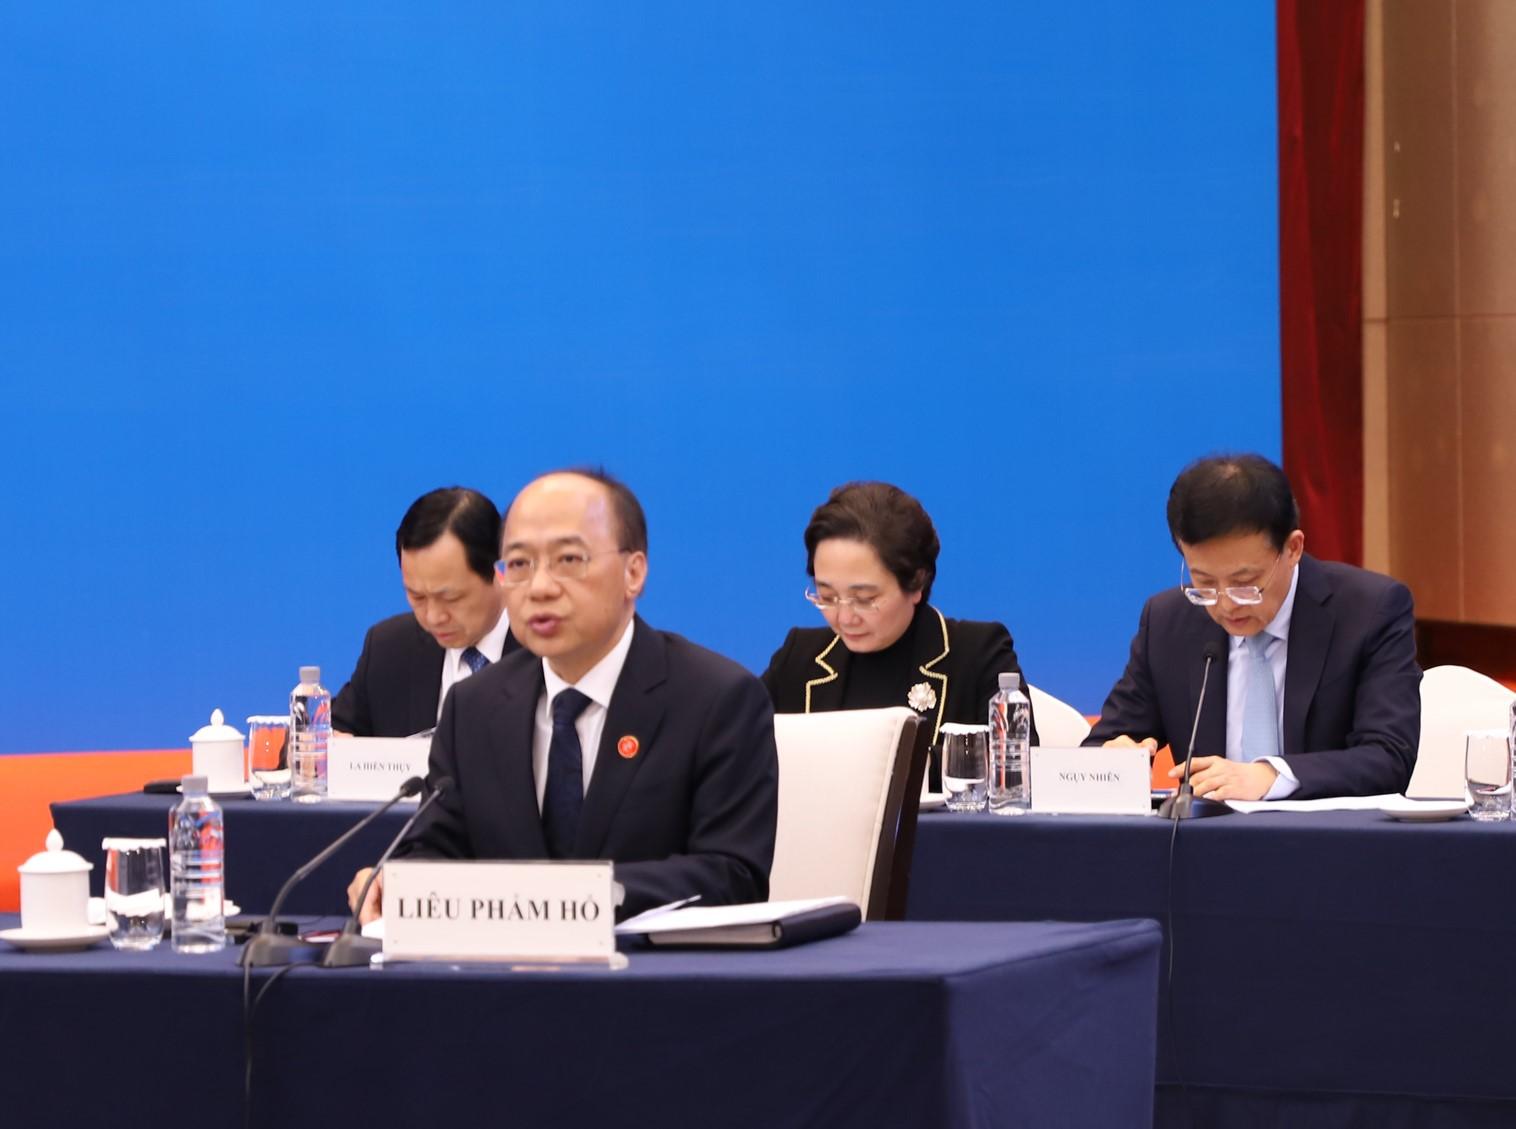 Phó Chủ tịch Chính quyền nhân dân Khu tự trị dân tộc Choang Quảng Tây, Trung Quốc, Chủ tịch Ủy ban Công tác liên hợp phía Quảng Tây Liêu Phẩm Hổ phát biểu tại hội nghị.